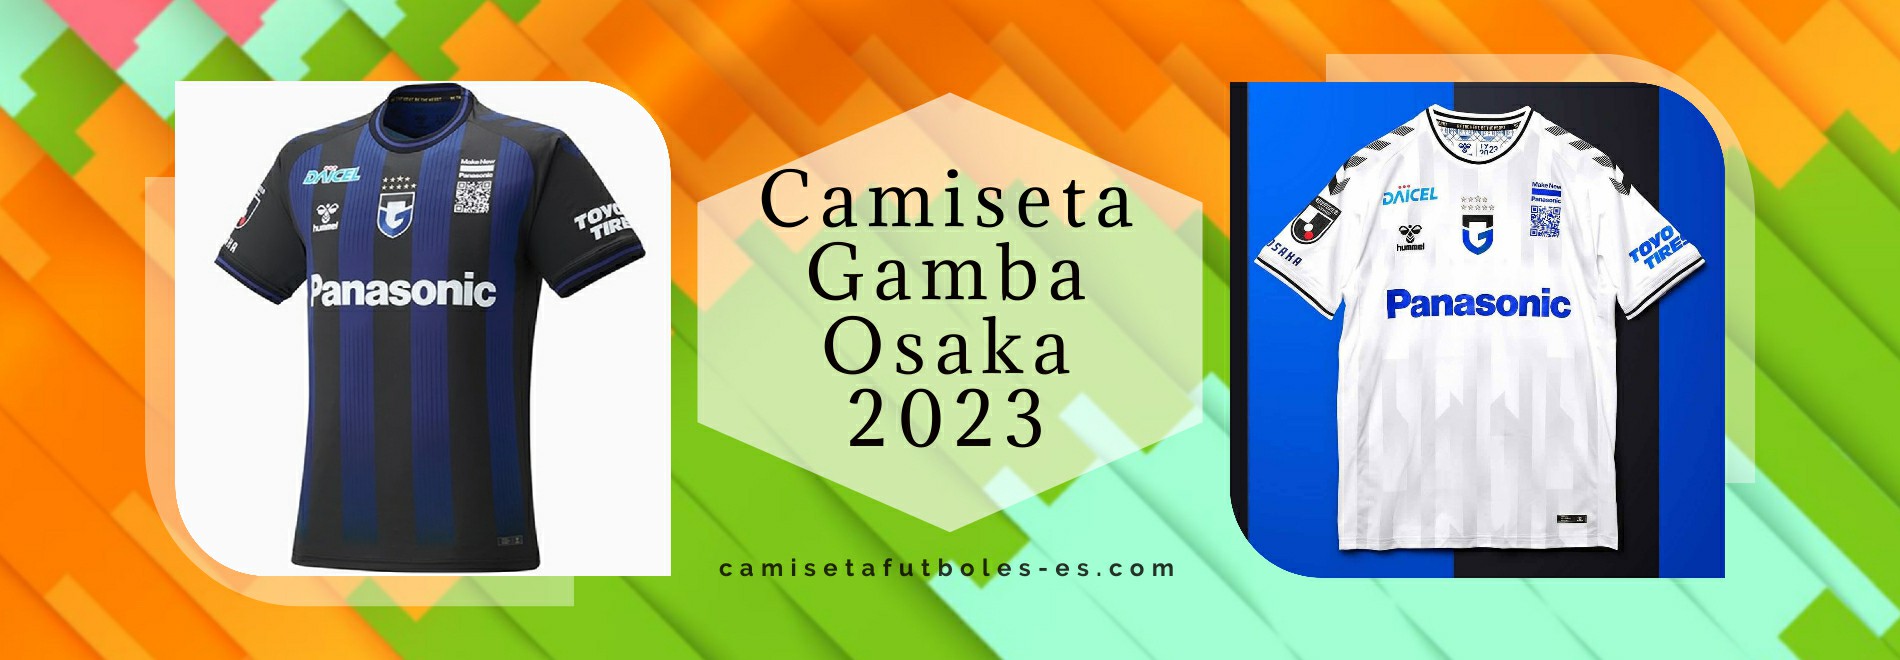 Camiseta Gamba Osaka 2023-2024